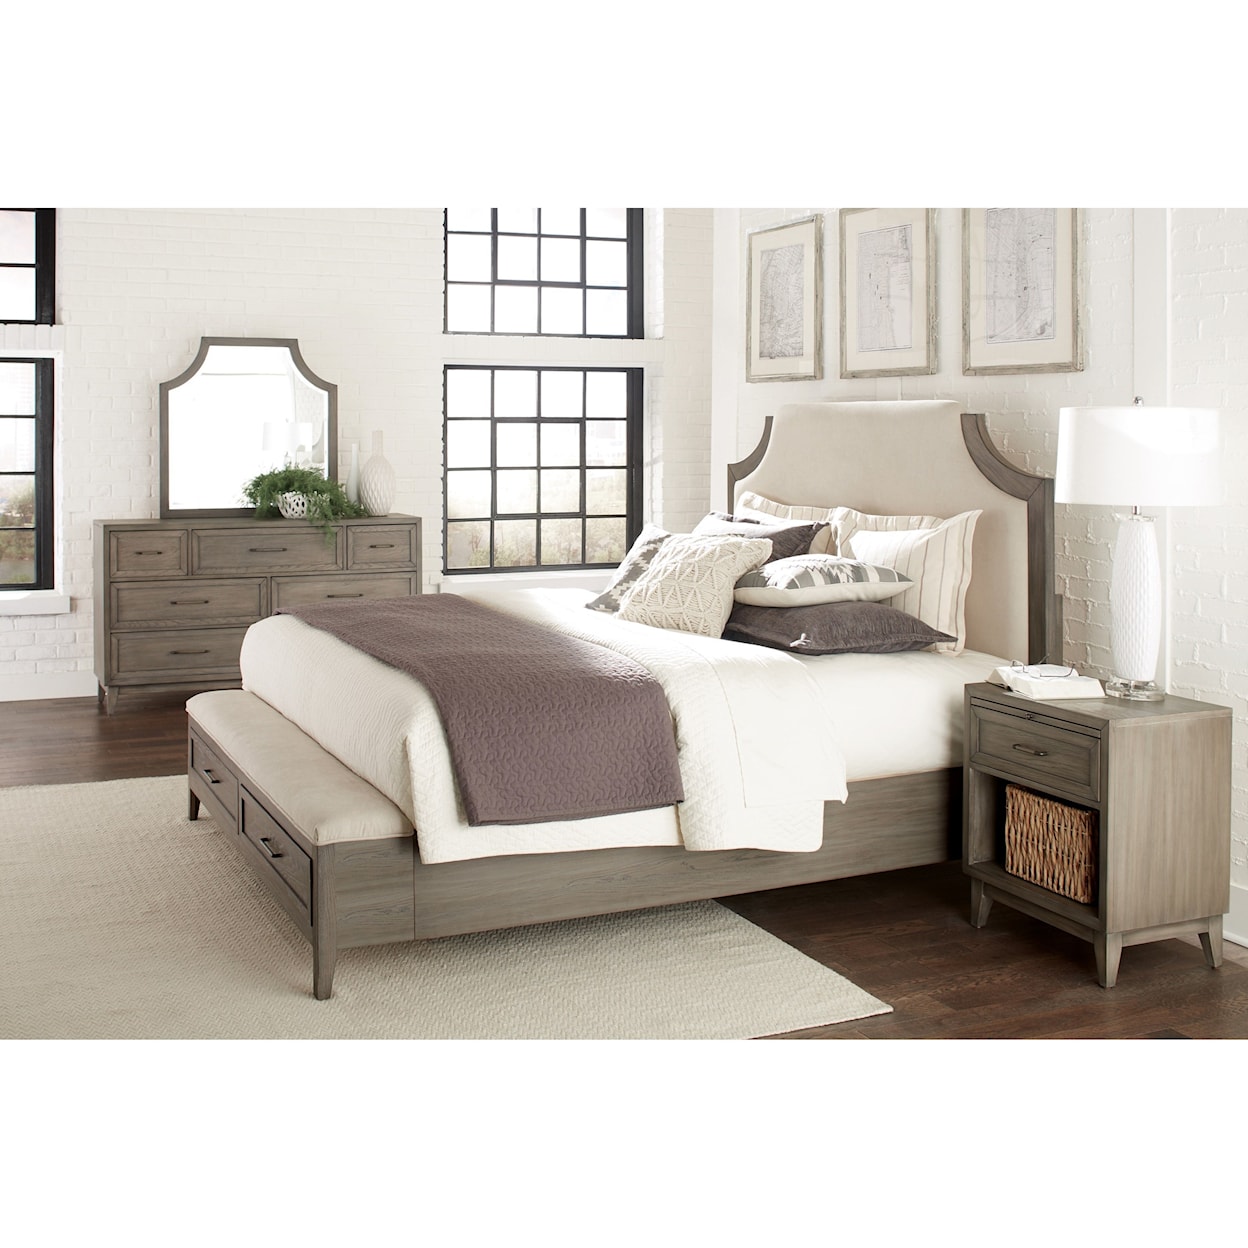 Riverside Furniture Vogue King Upholstered Storage Bed